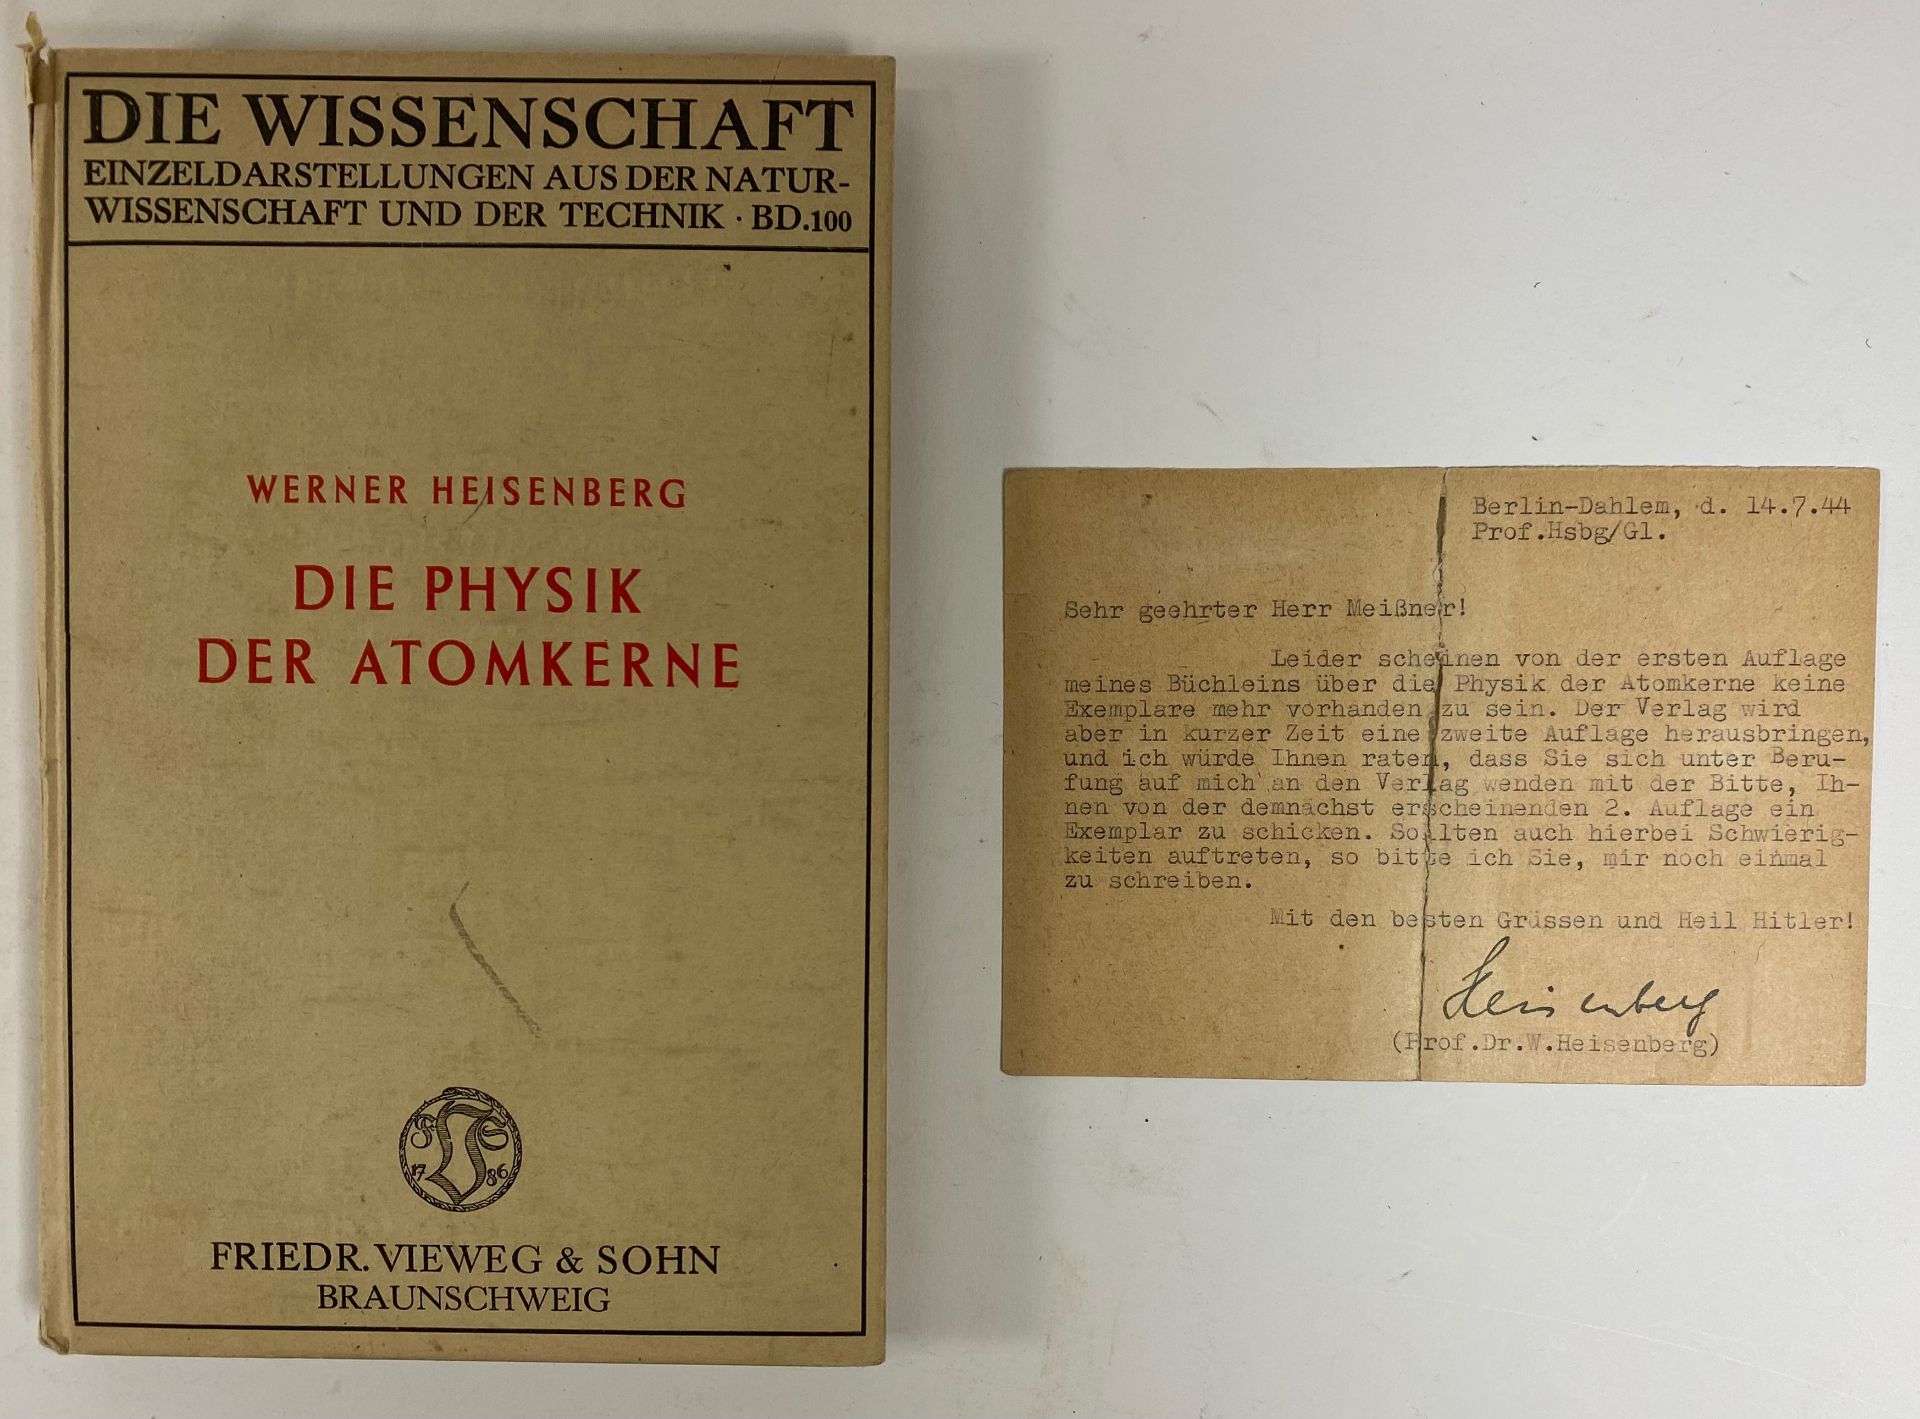 HEISENBERG, W. Die Physik der Atomkerne. Braunschweig, F. Vieweg & Sohn, 1943. vi